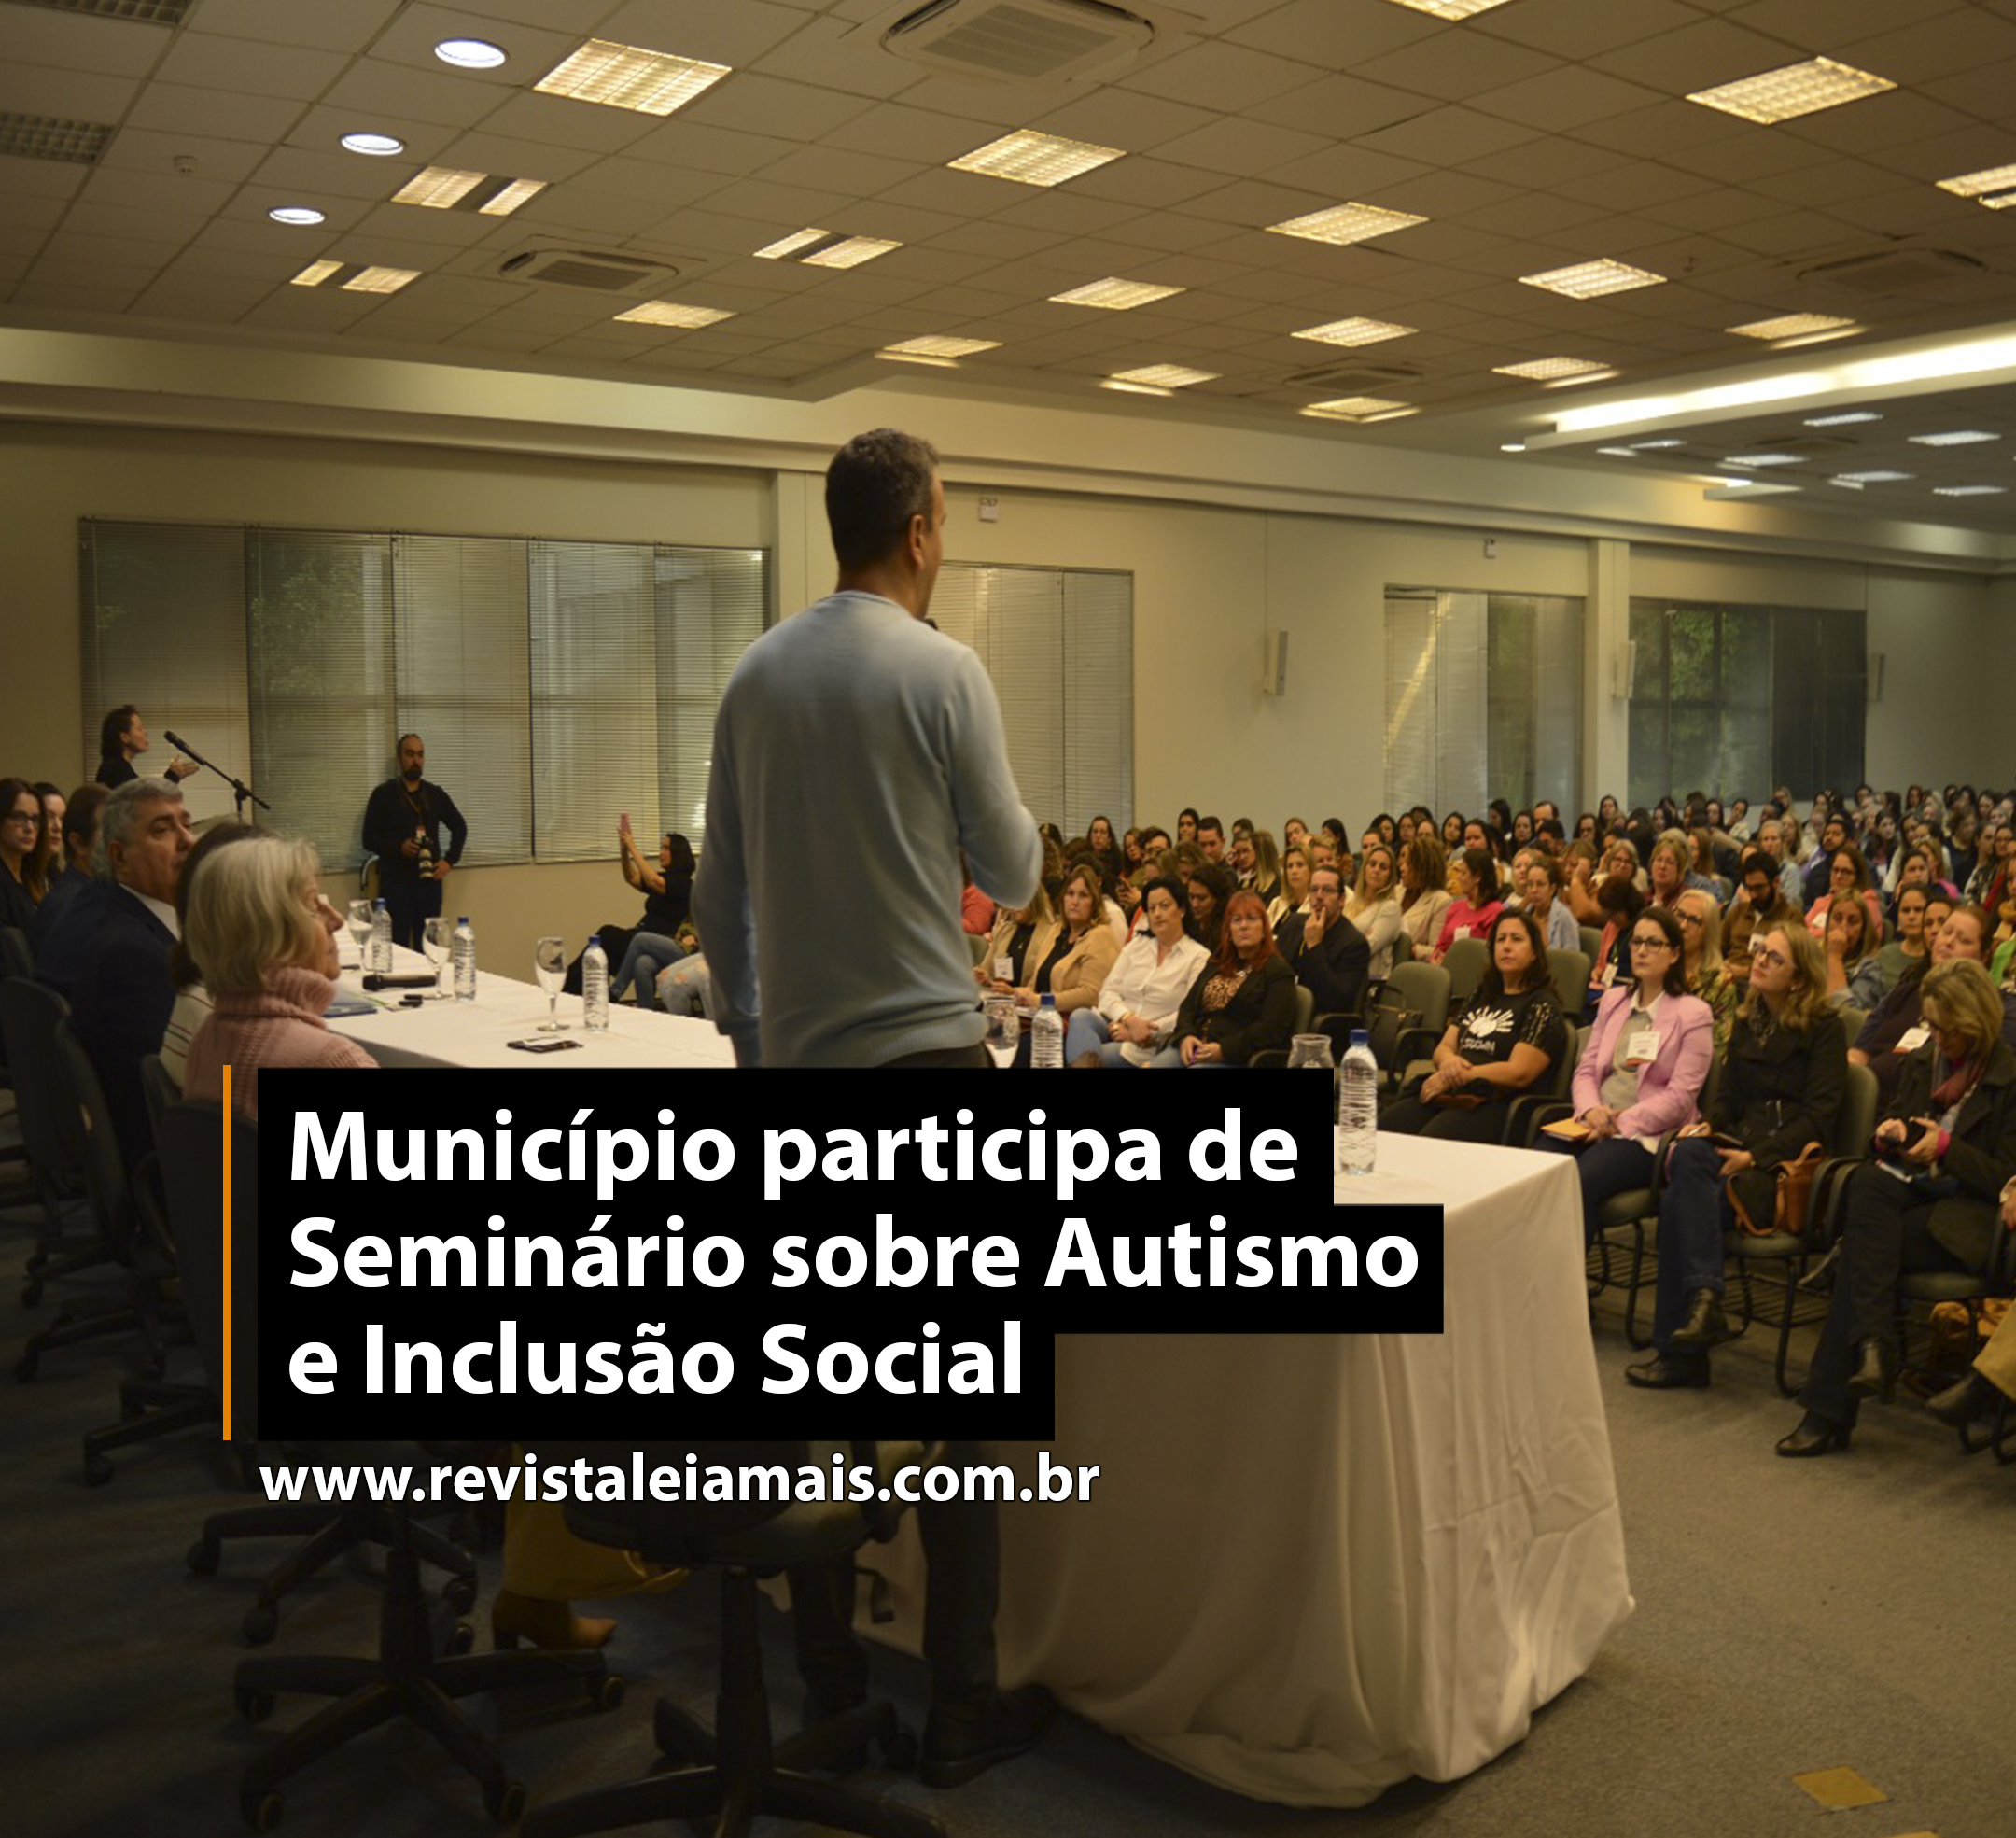 Município participa de Seminário sobre Autismo e Inclusão Social